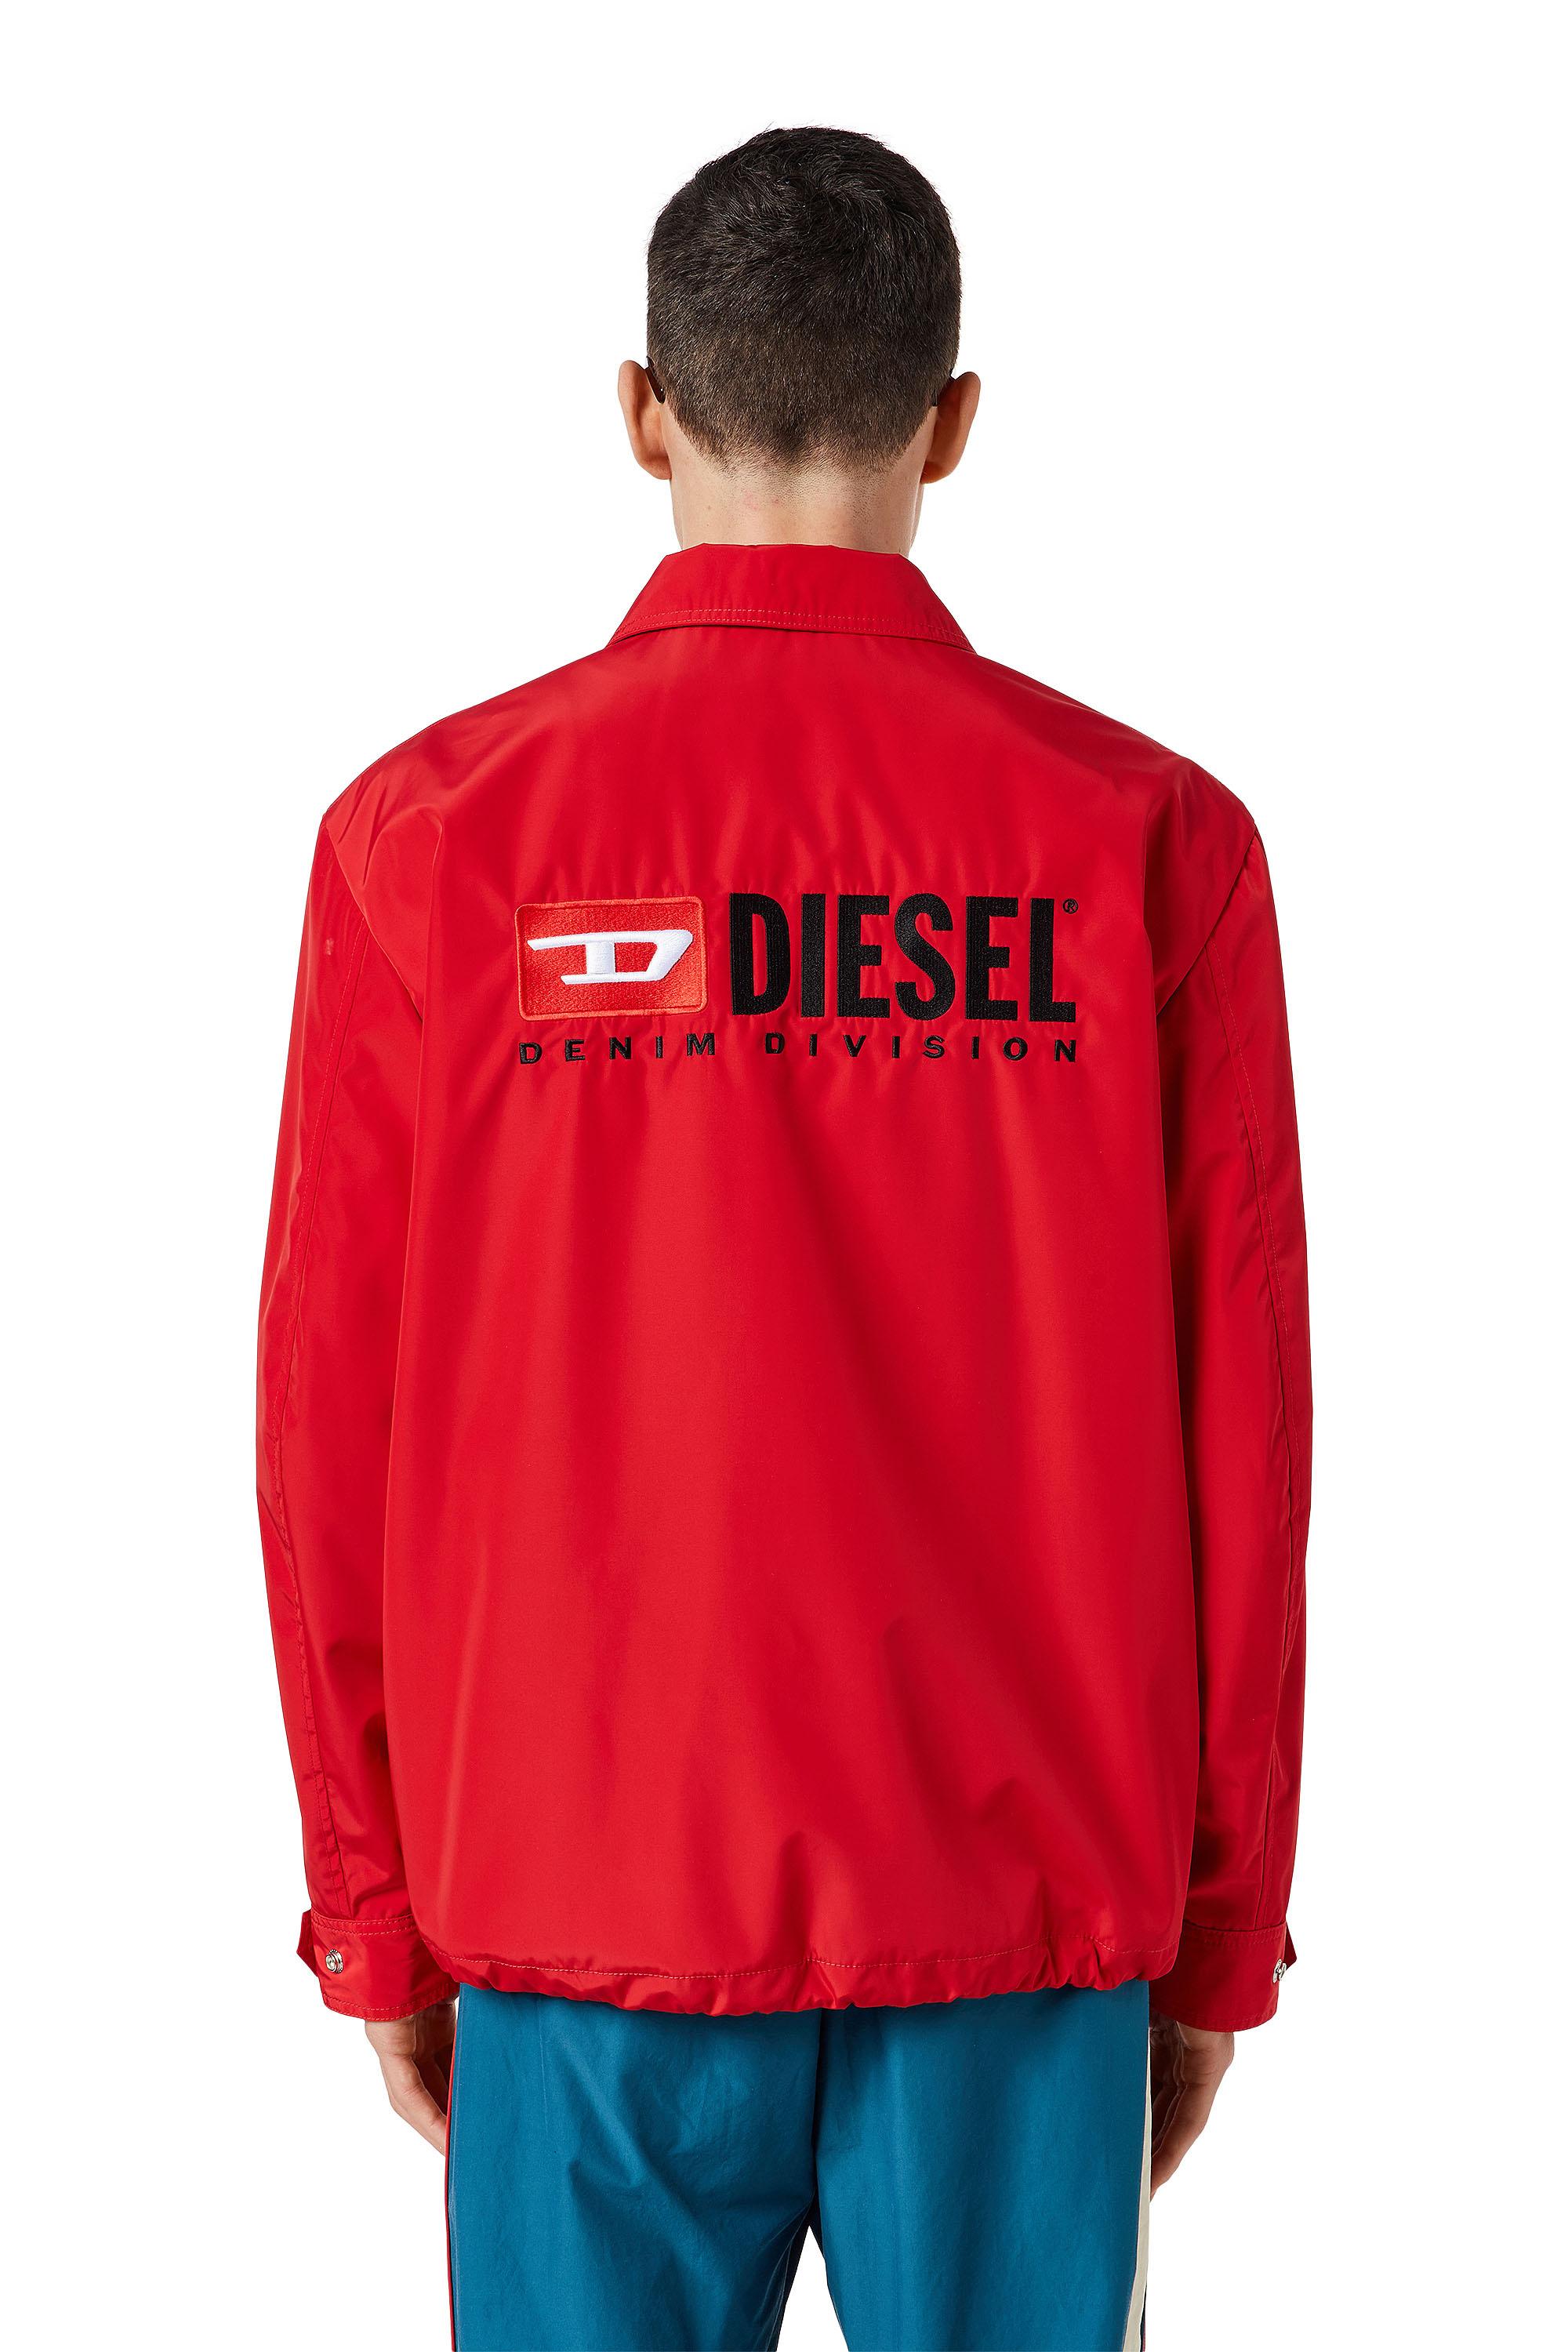 Diesel - J-COAL-NP, Red - Image 4